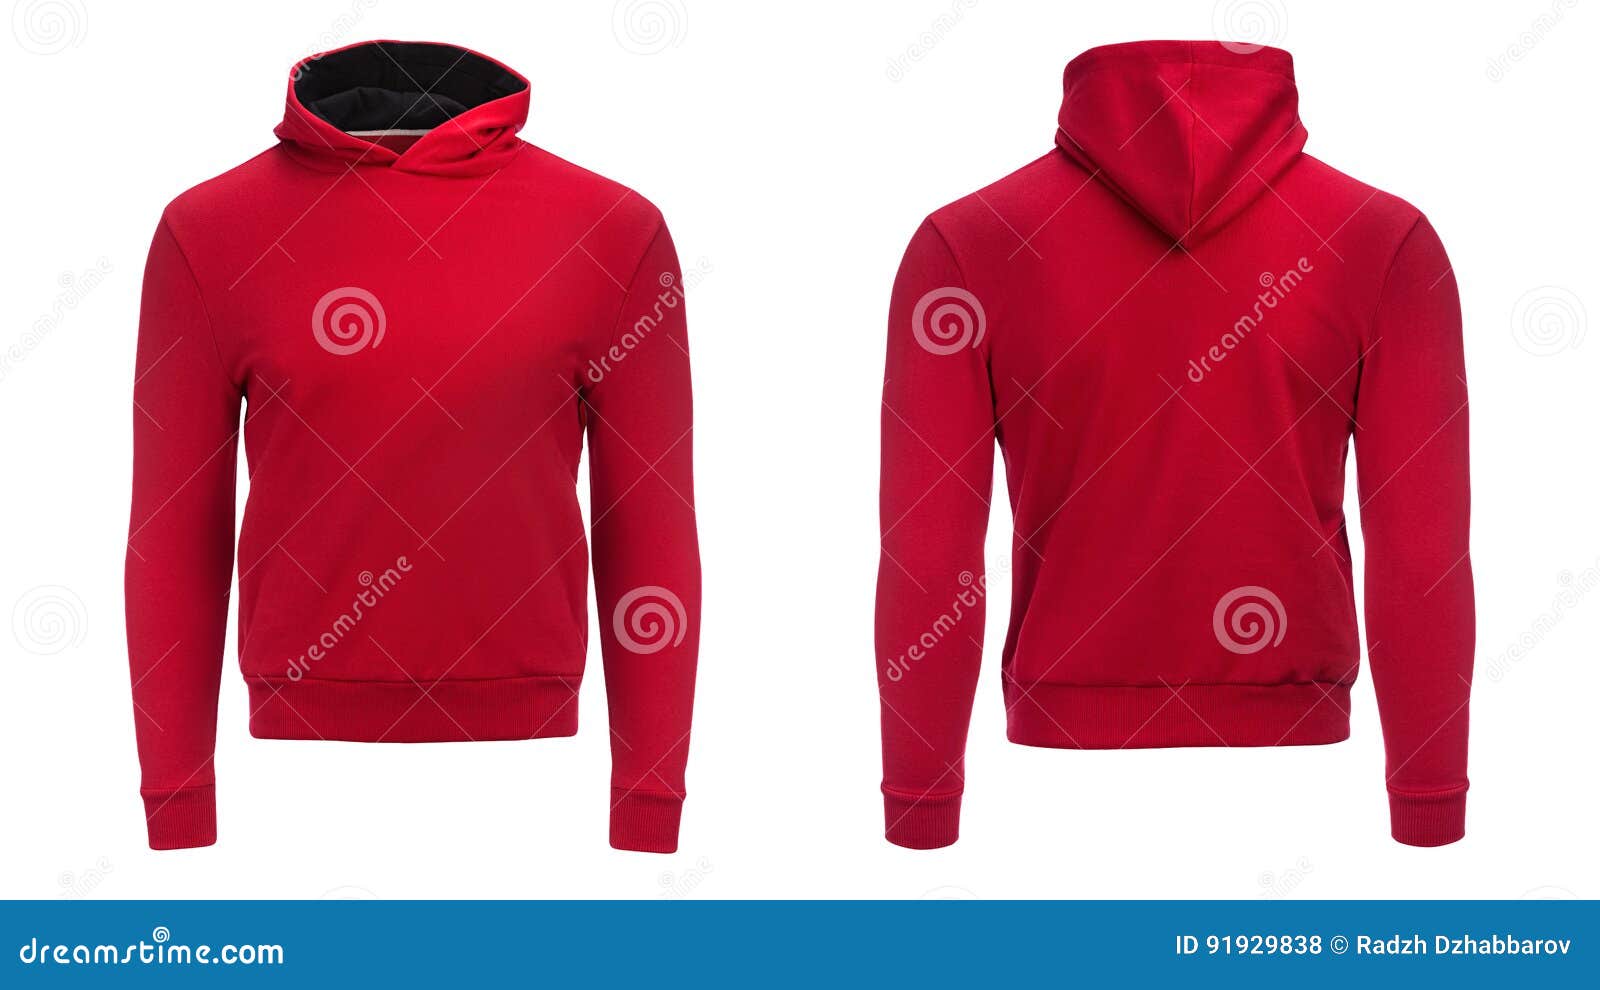 Sudadera Con Capucha Roja, Maqueta De La Camiseta, Aislada En El